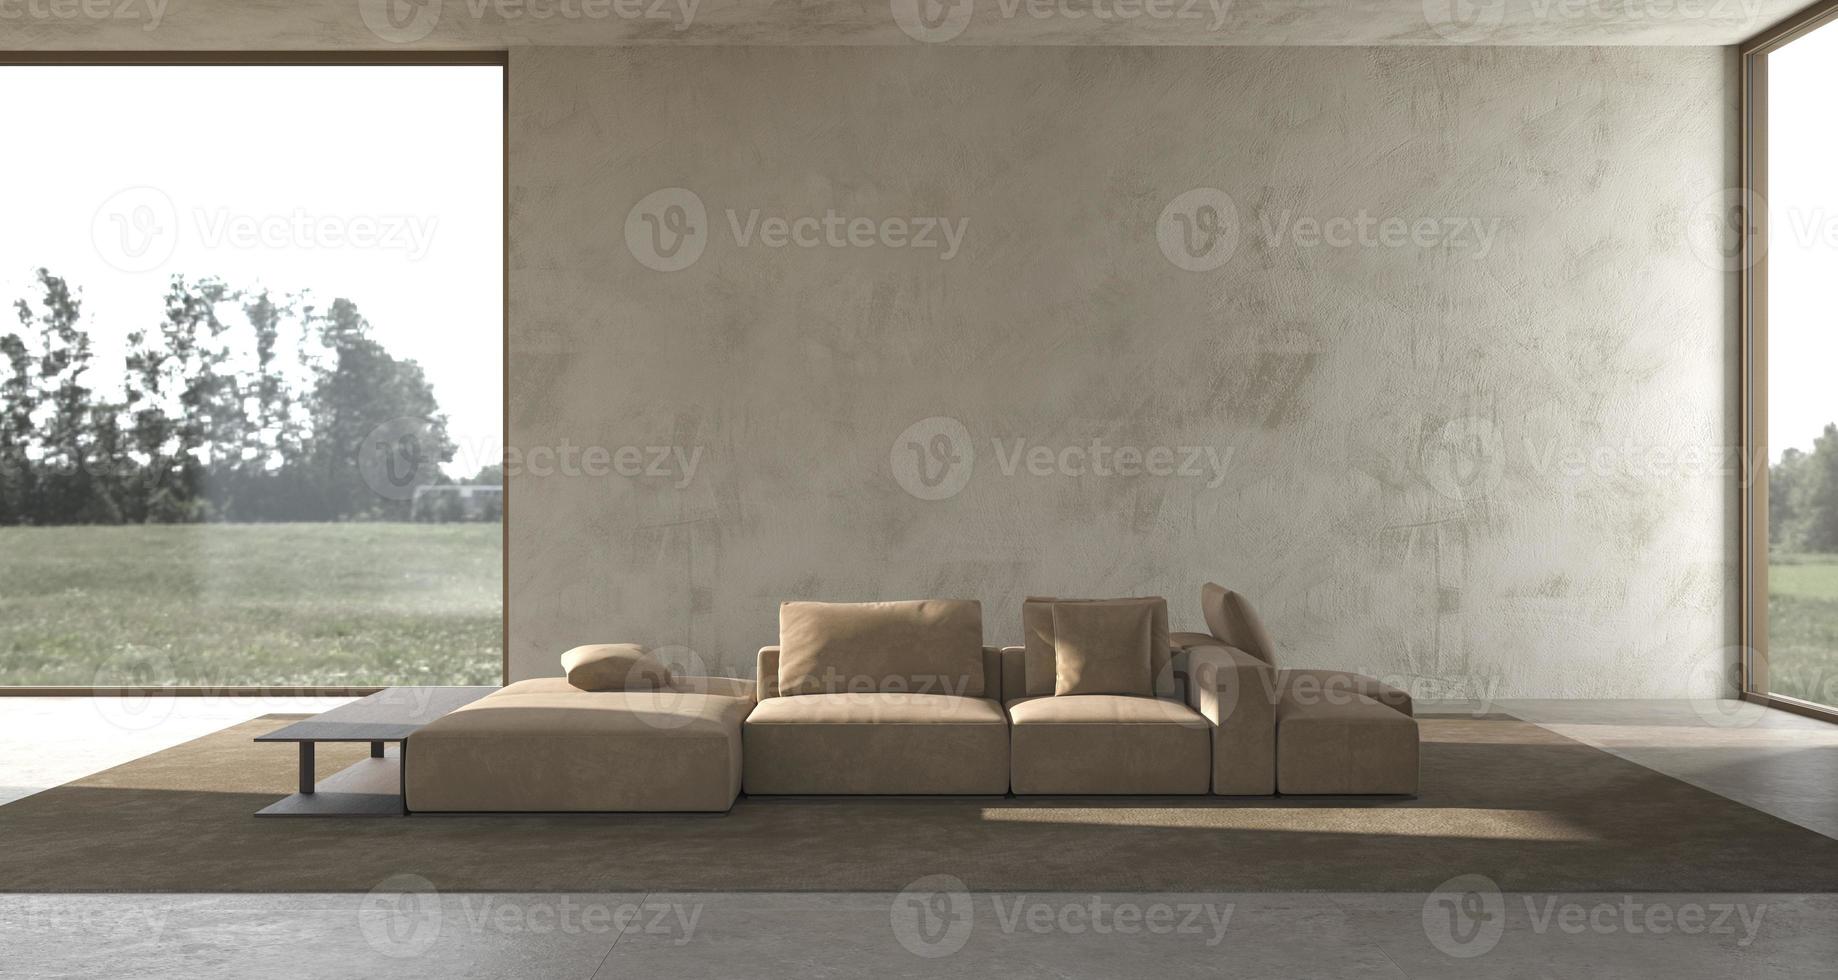 minimalismo interior moderno diseño escandinavo estudio luminoso sala de estar con pared de estuco simulacro y naturaleza panorámica vista de bosque fondo ilustración de renderizado 3d foto